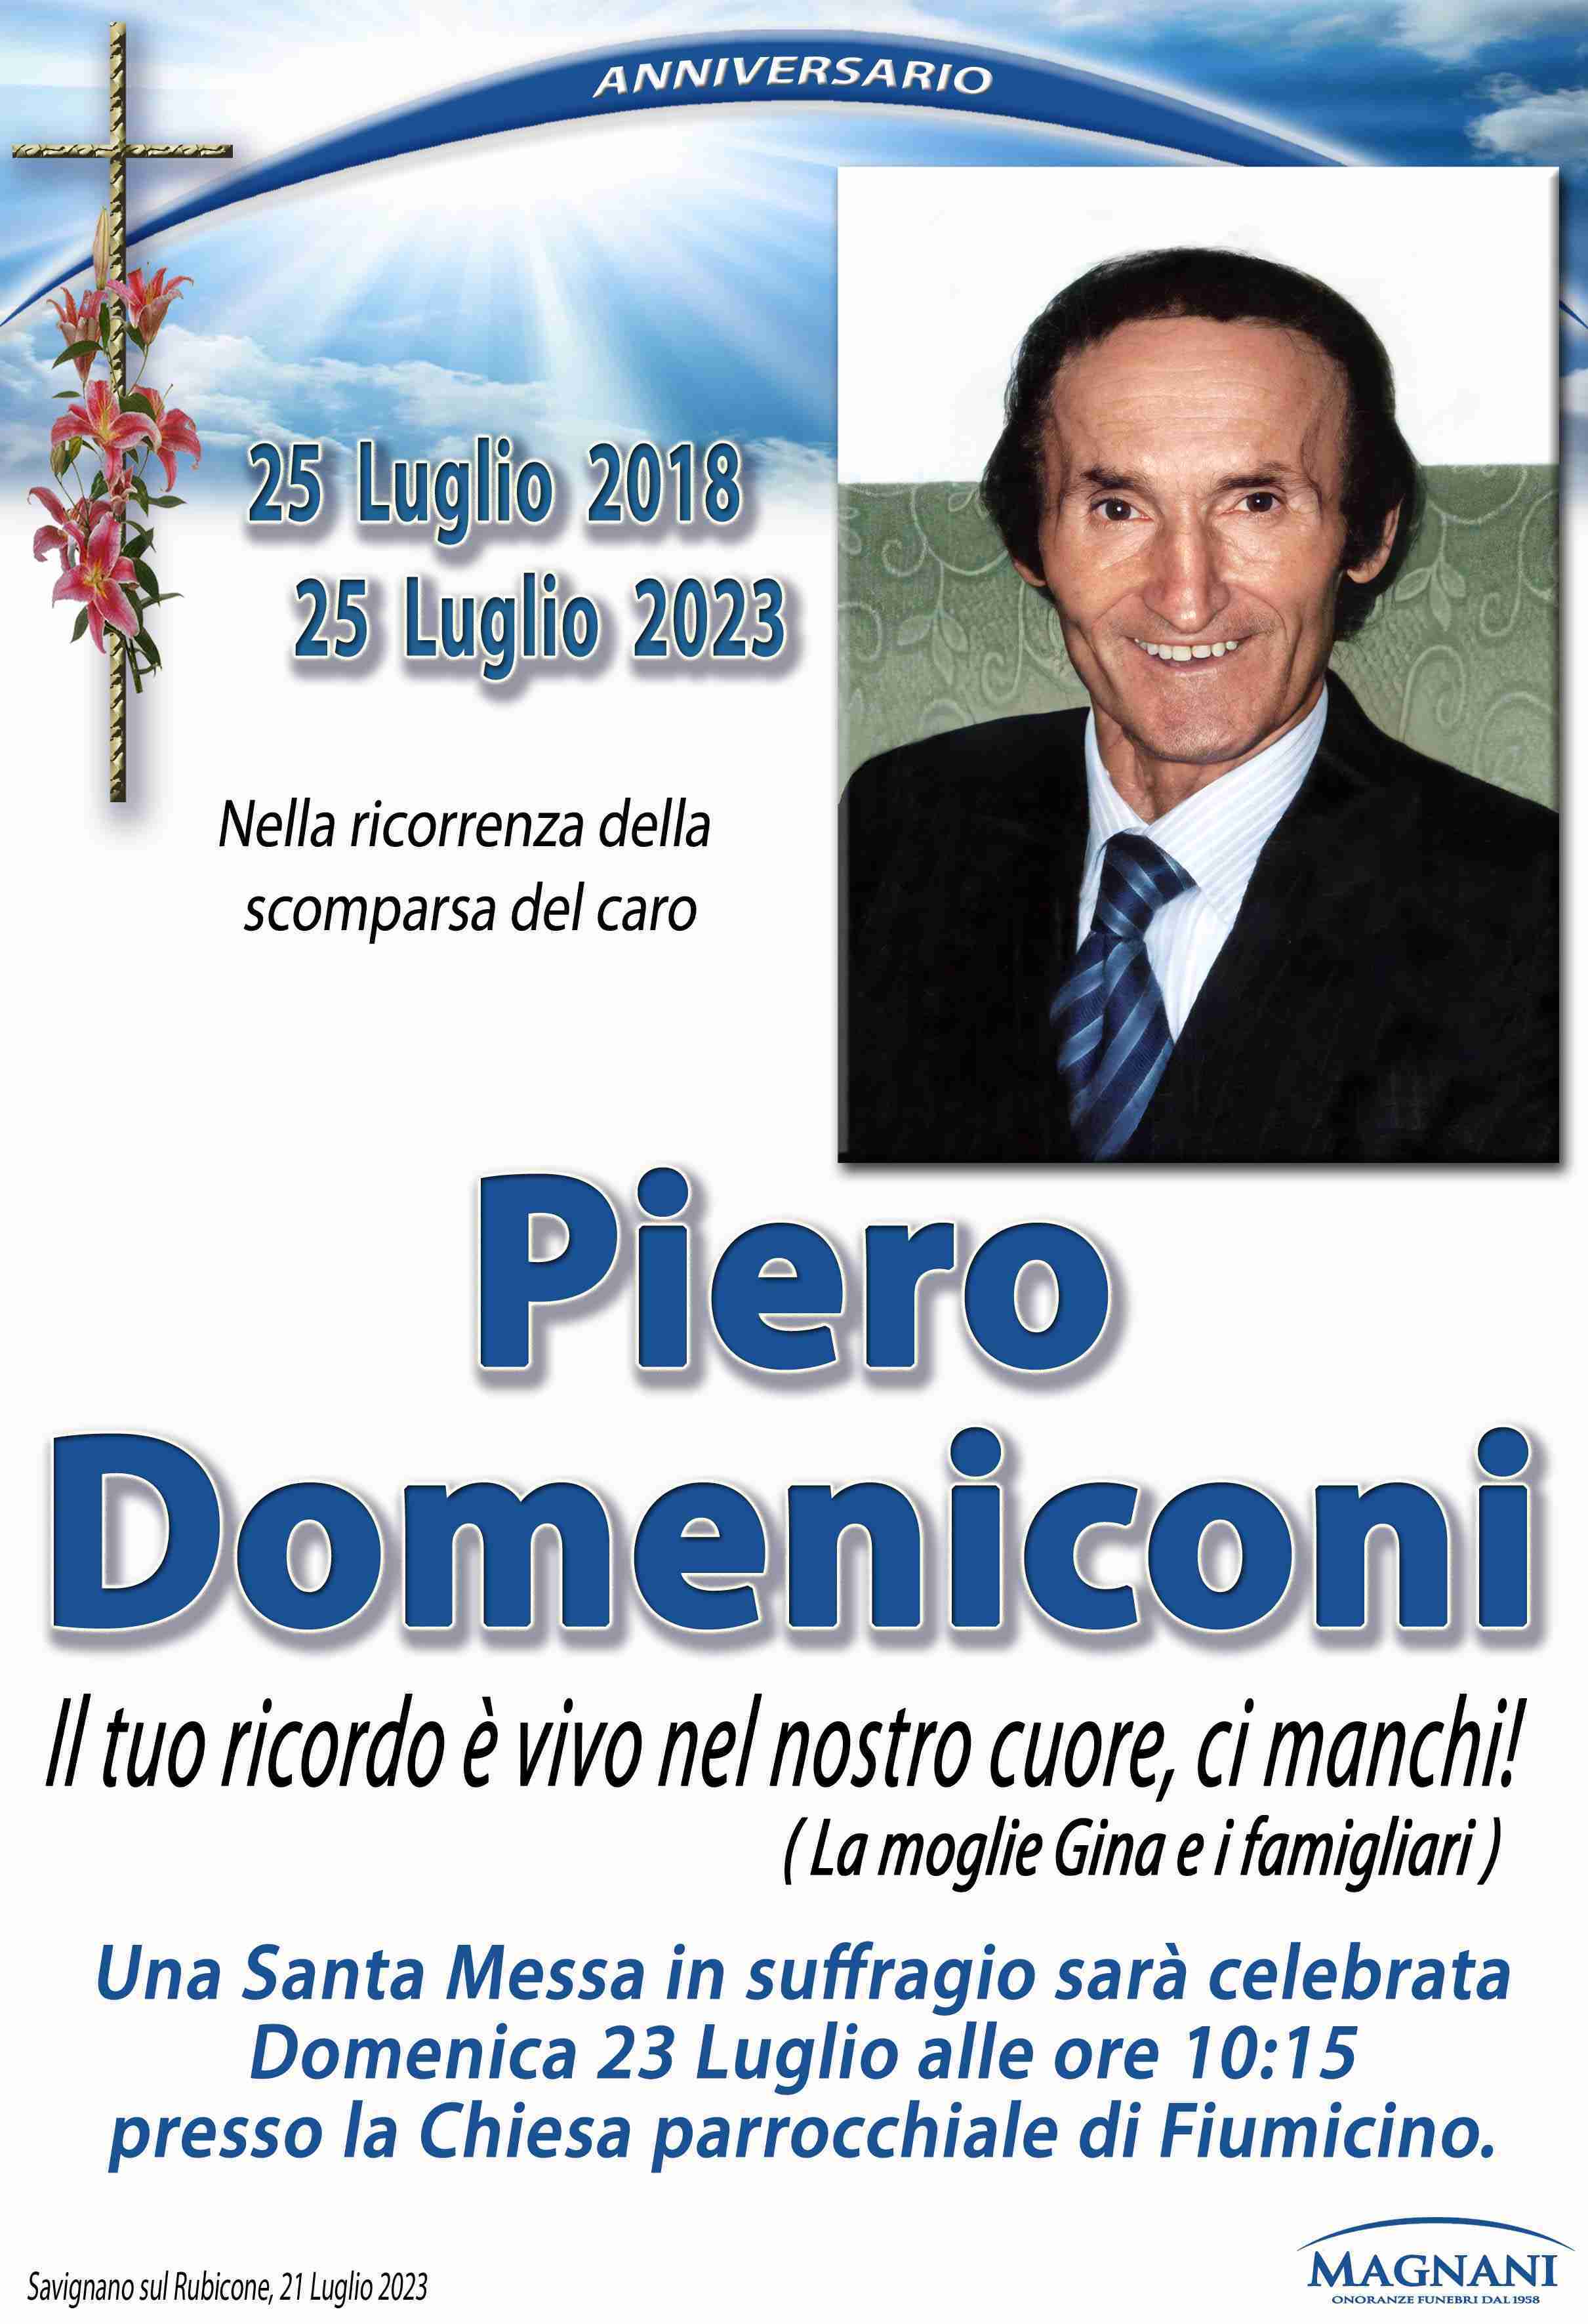 Piero Domeniconi